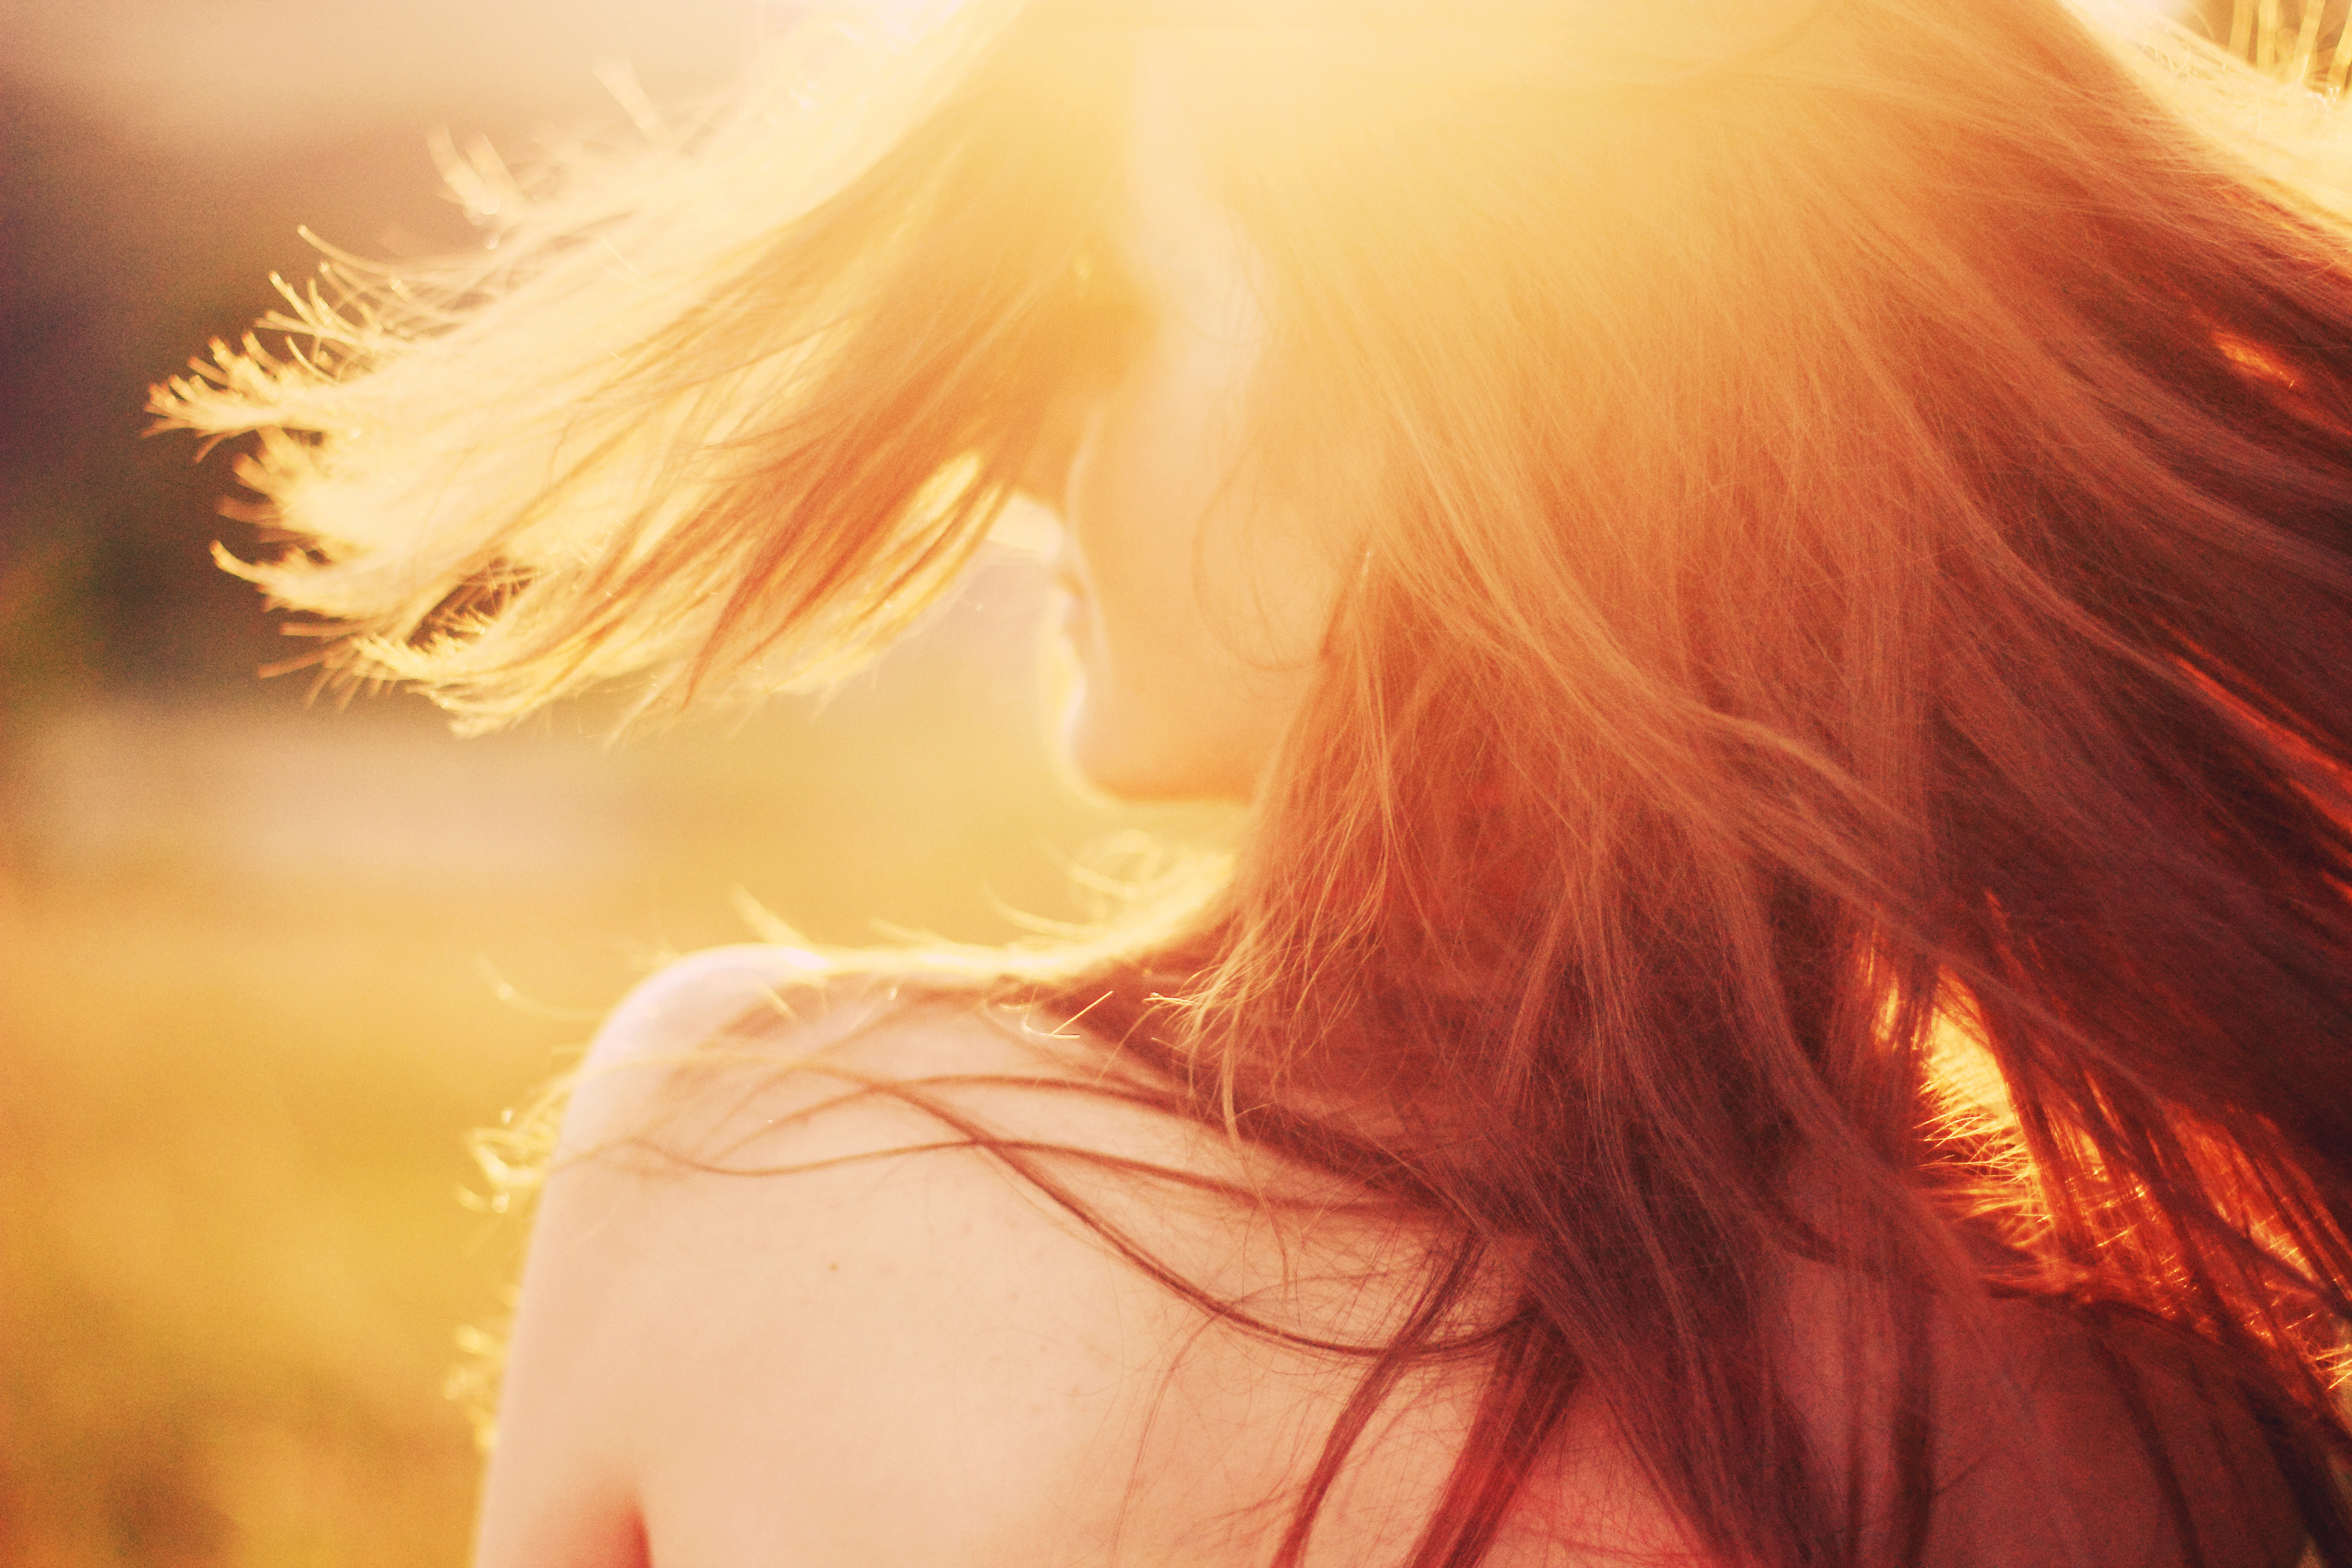 Размытые авы. Девушка и солнце. Девушка в солнечных лучах. Девушка в лучах солнца. Девушка с рыжими волосами.